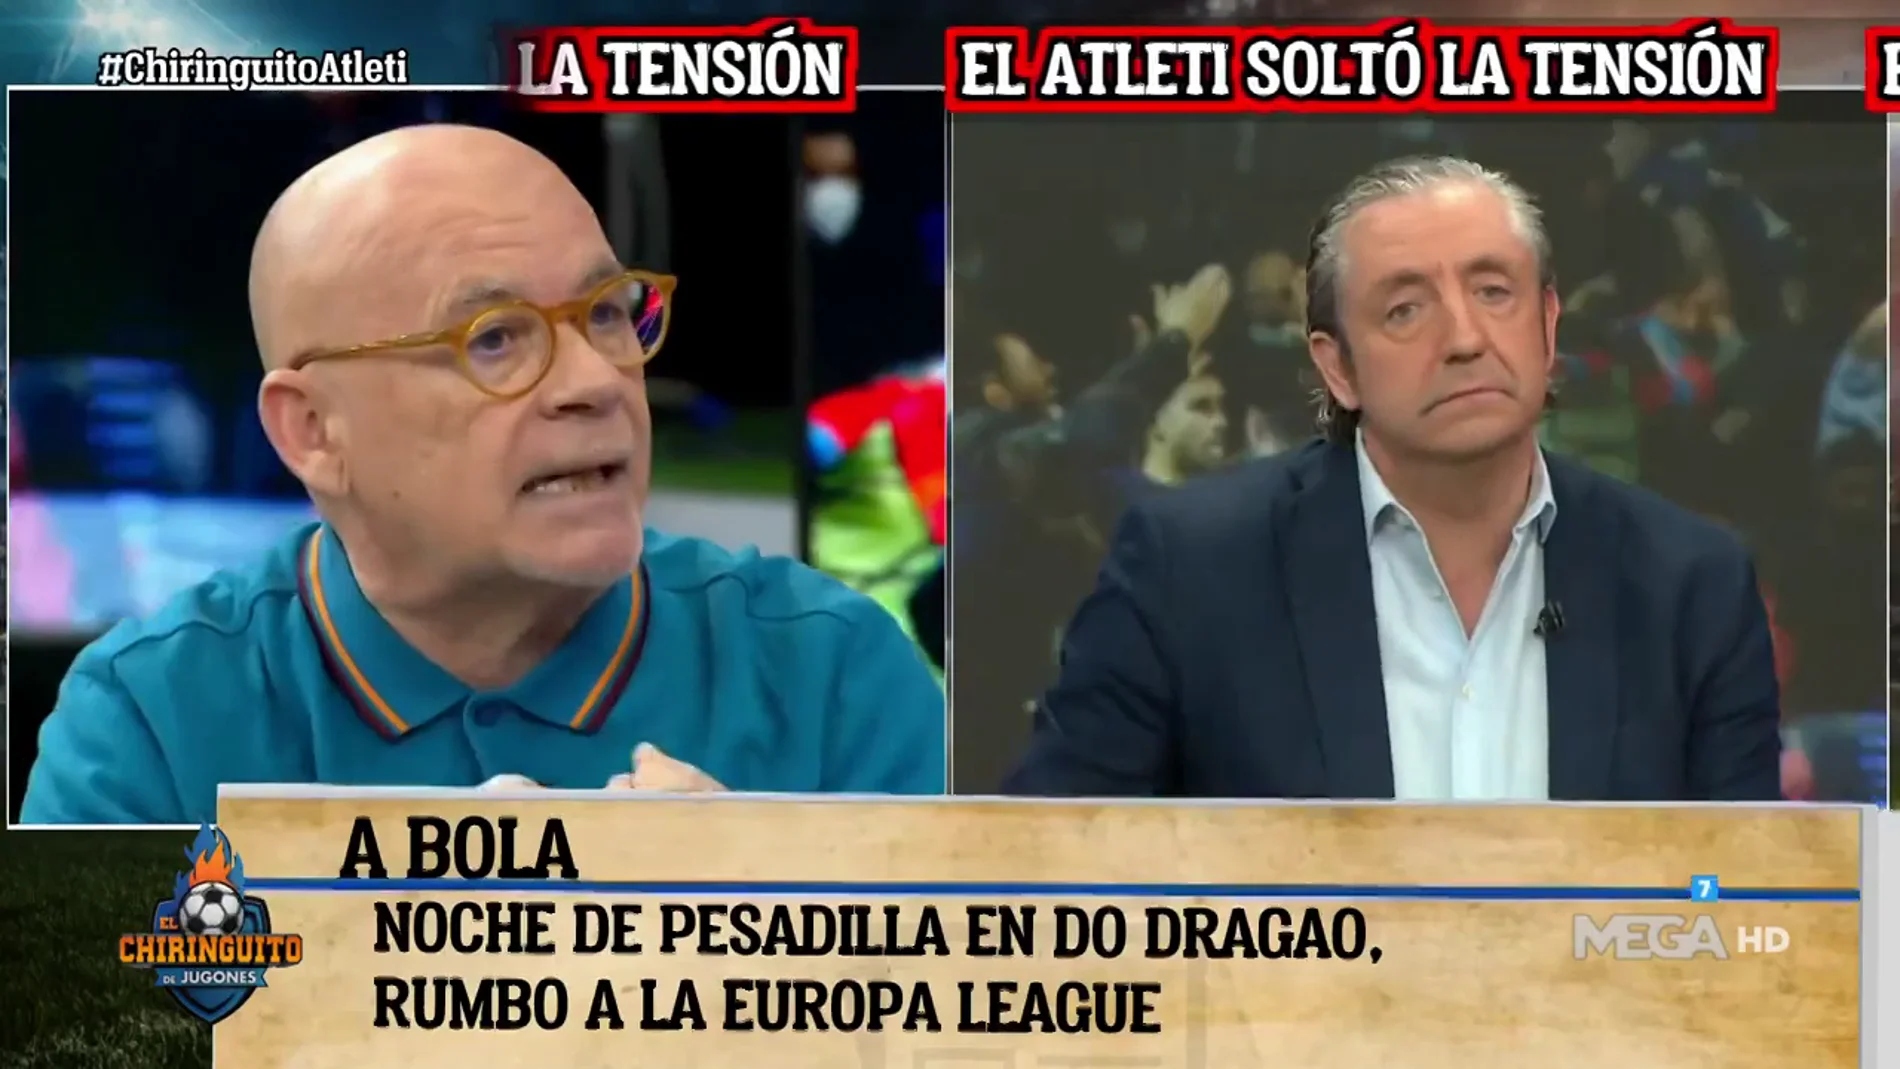 Alfredo Duro: "El Atleti tenía la obligación de ganar al Porto"